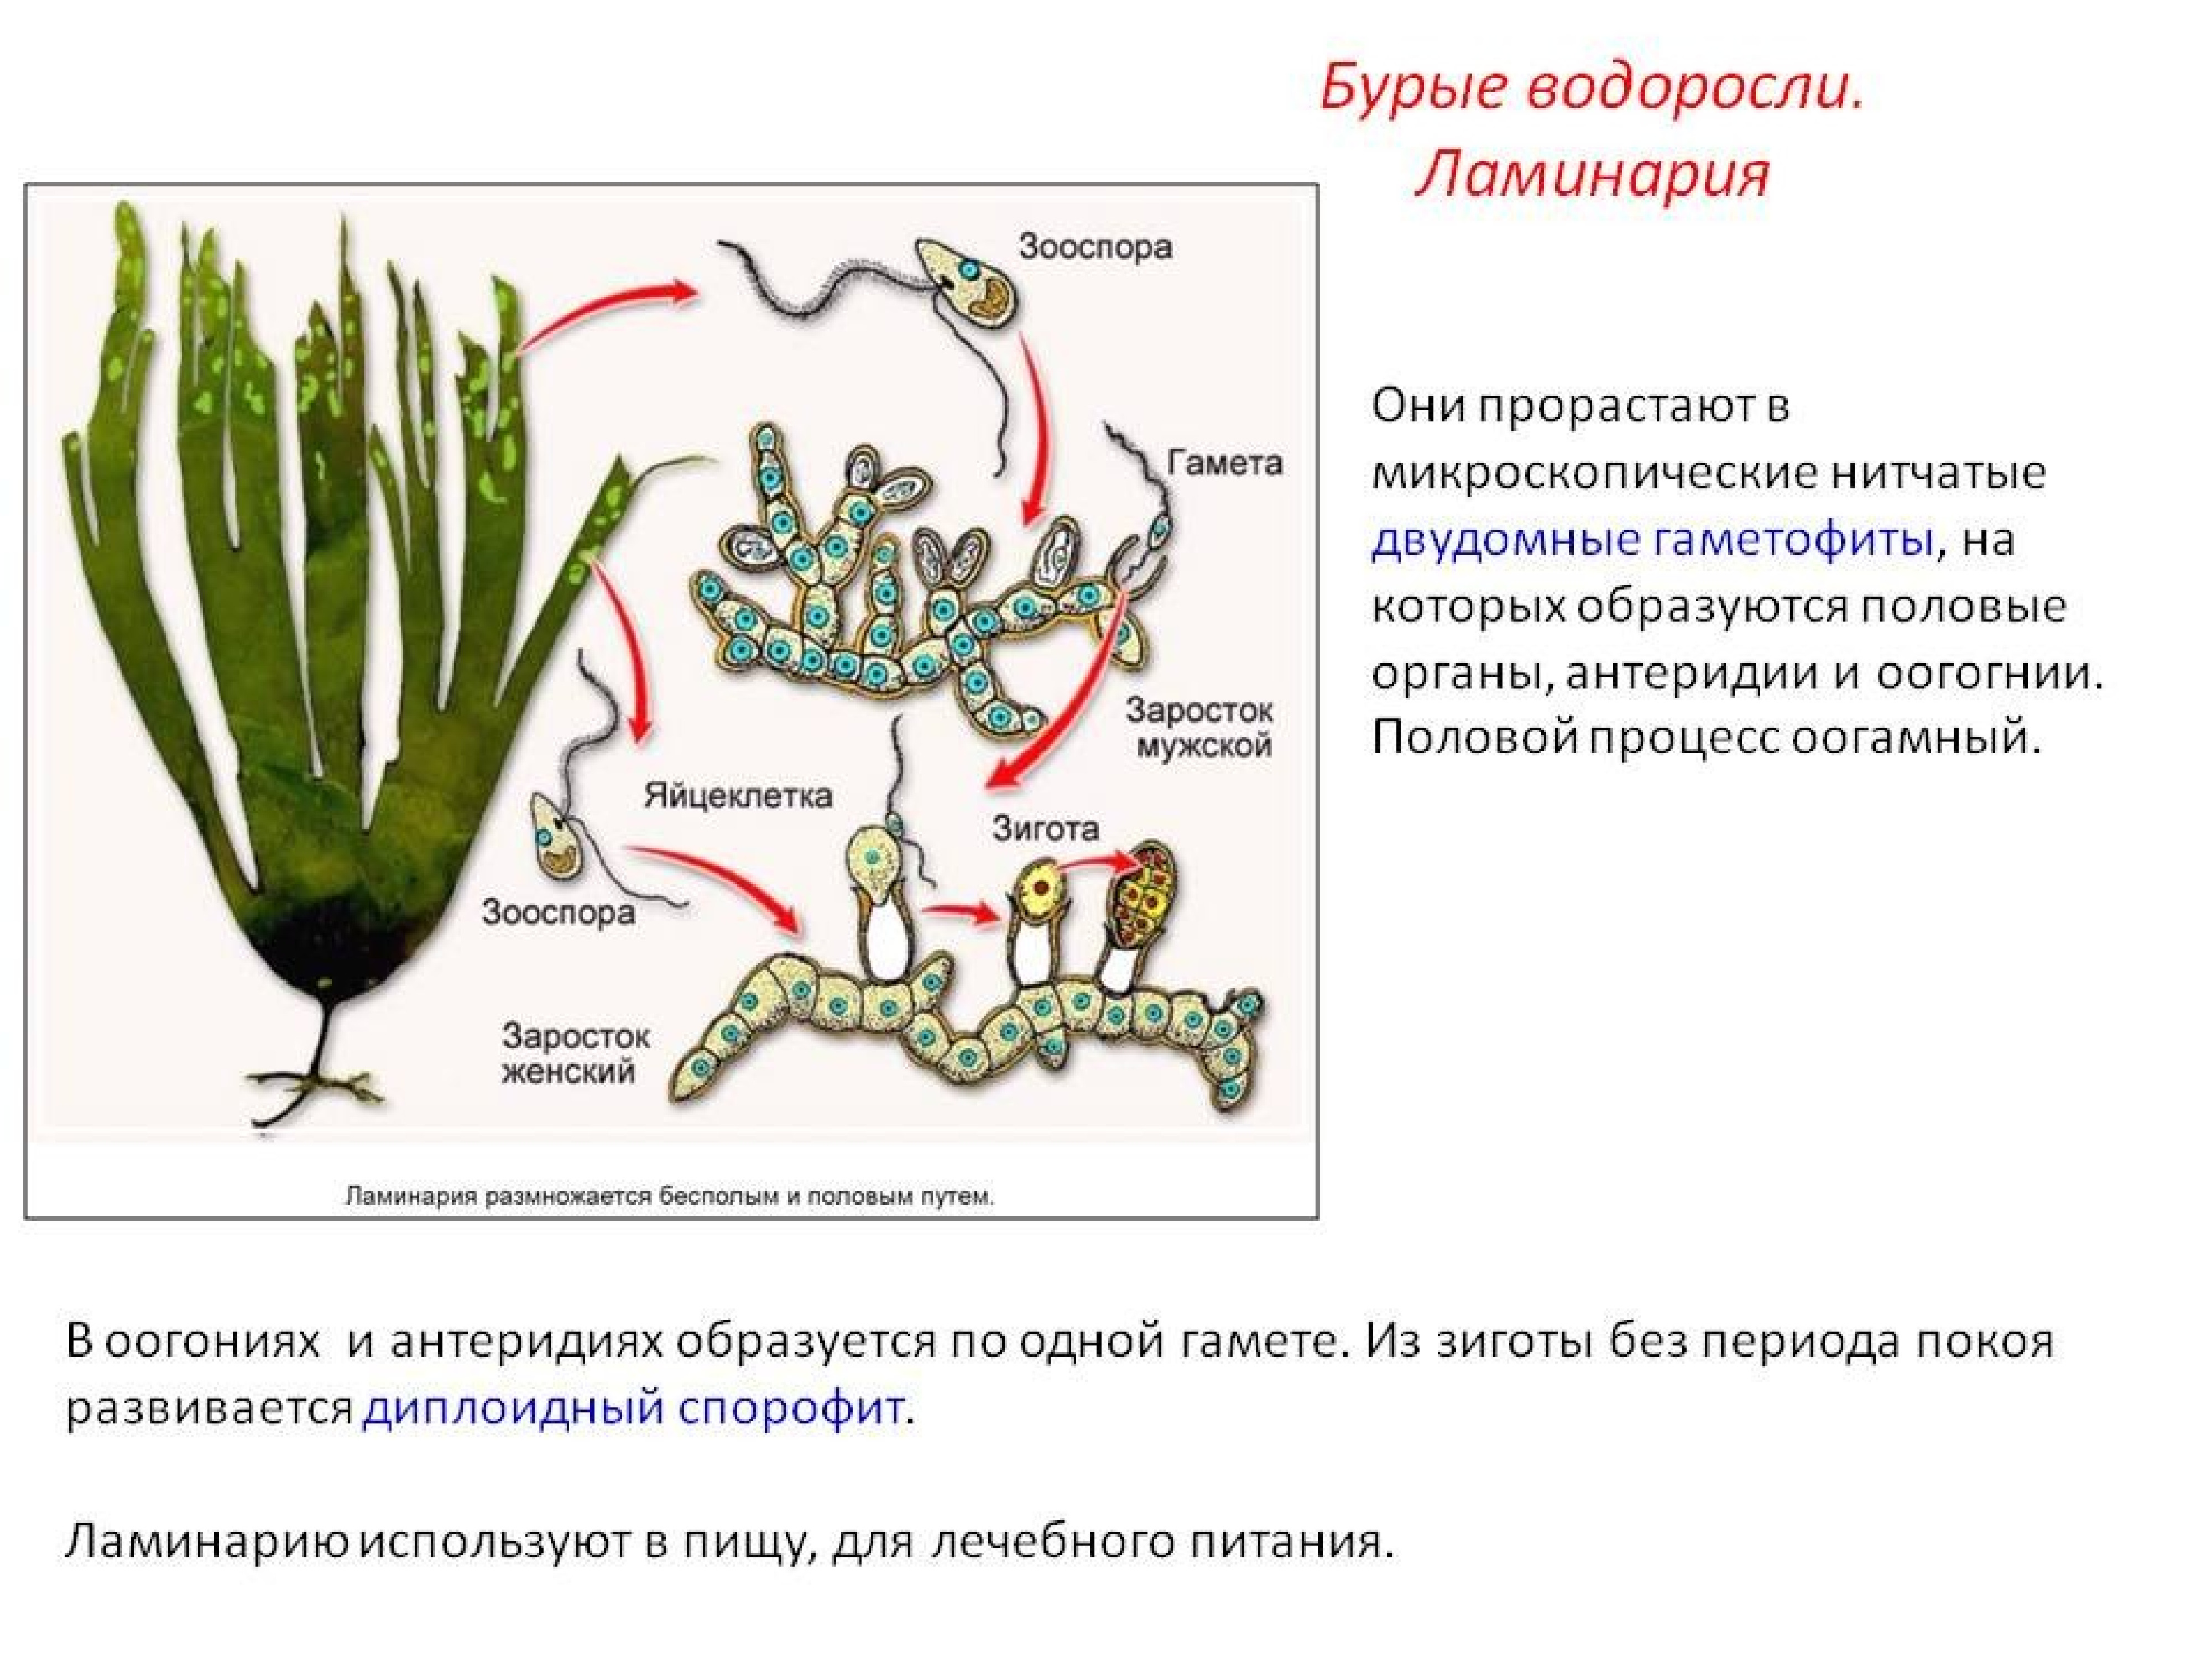 Тип питания низших растений. Цикл размножения бурых водорослей. Размножение бурых водорослей жизненный цикл. Процесс размножения бурых водорослей. Цикл развития бурых водорослей схема.